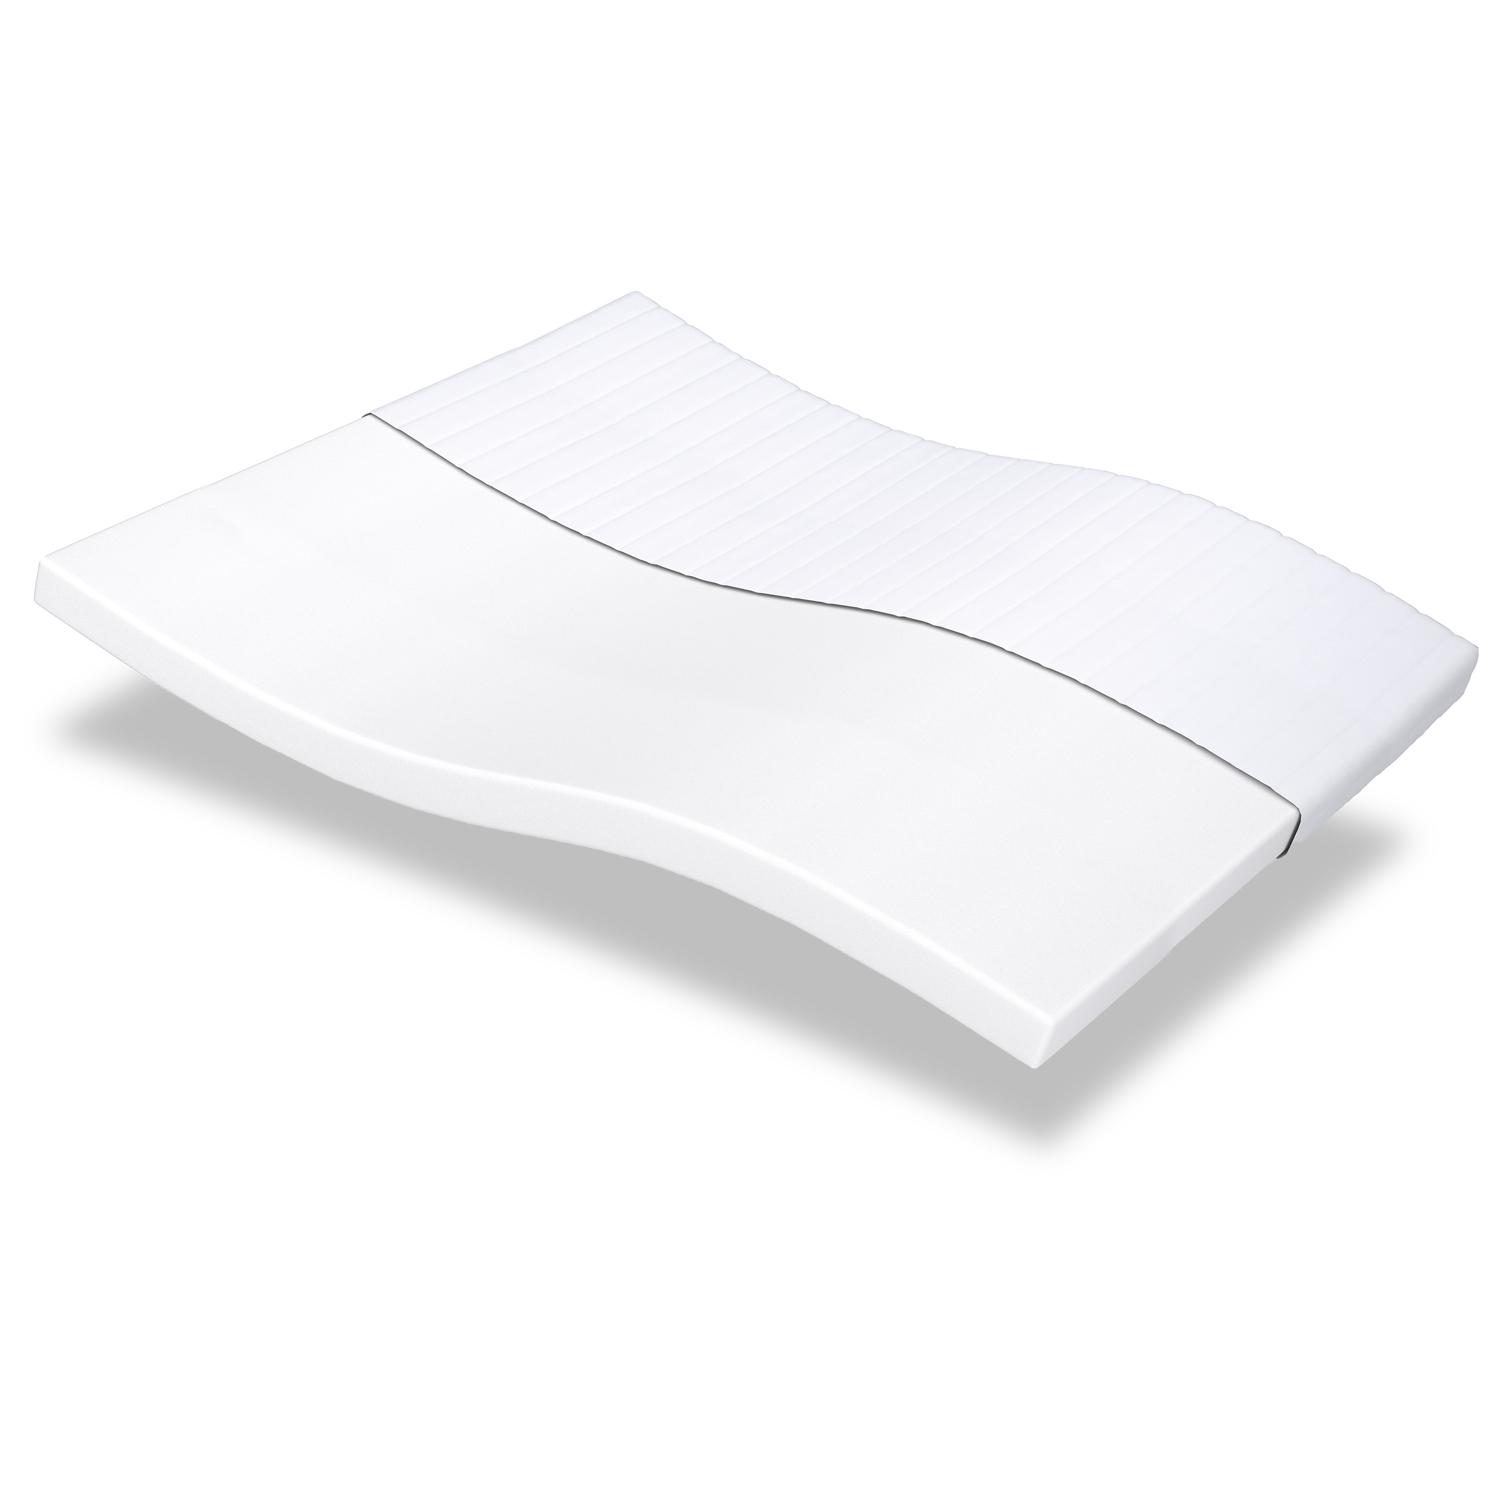 Comfort foam mattress K10 180 x 200 cm, height 10 cm, firmness level H3